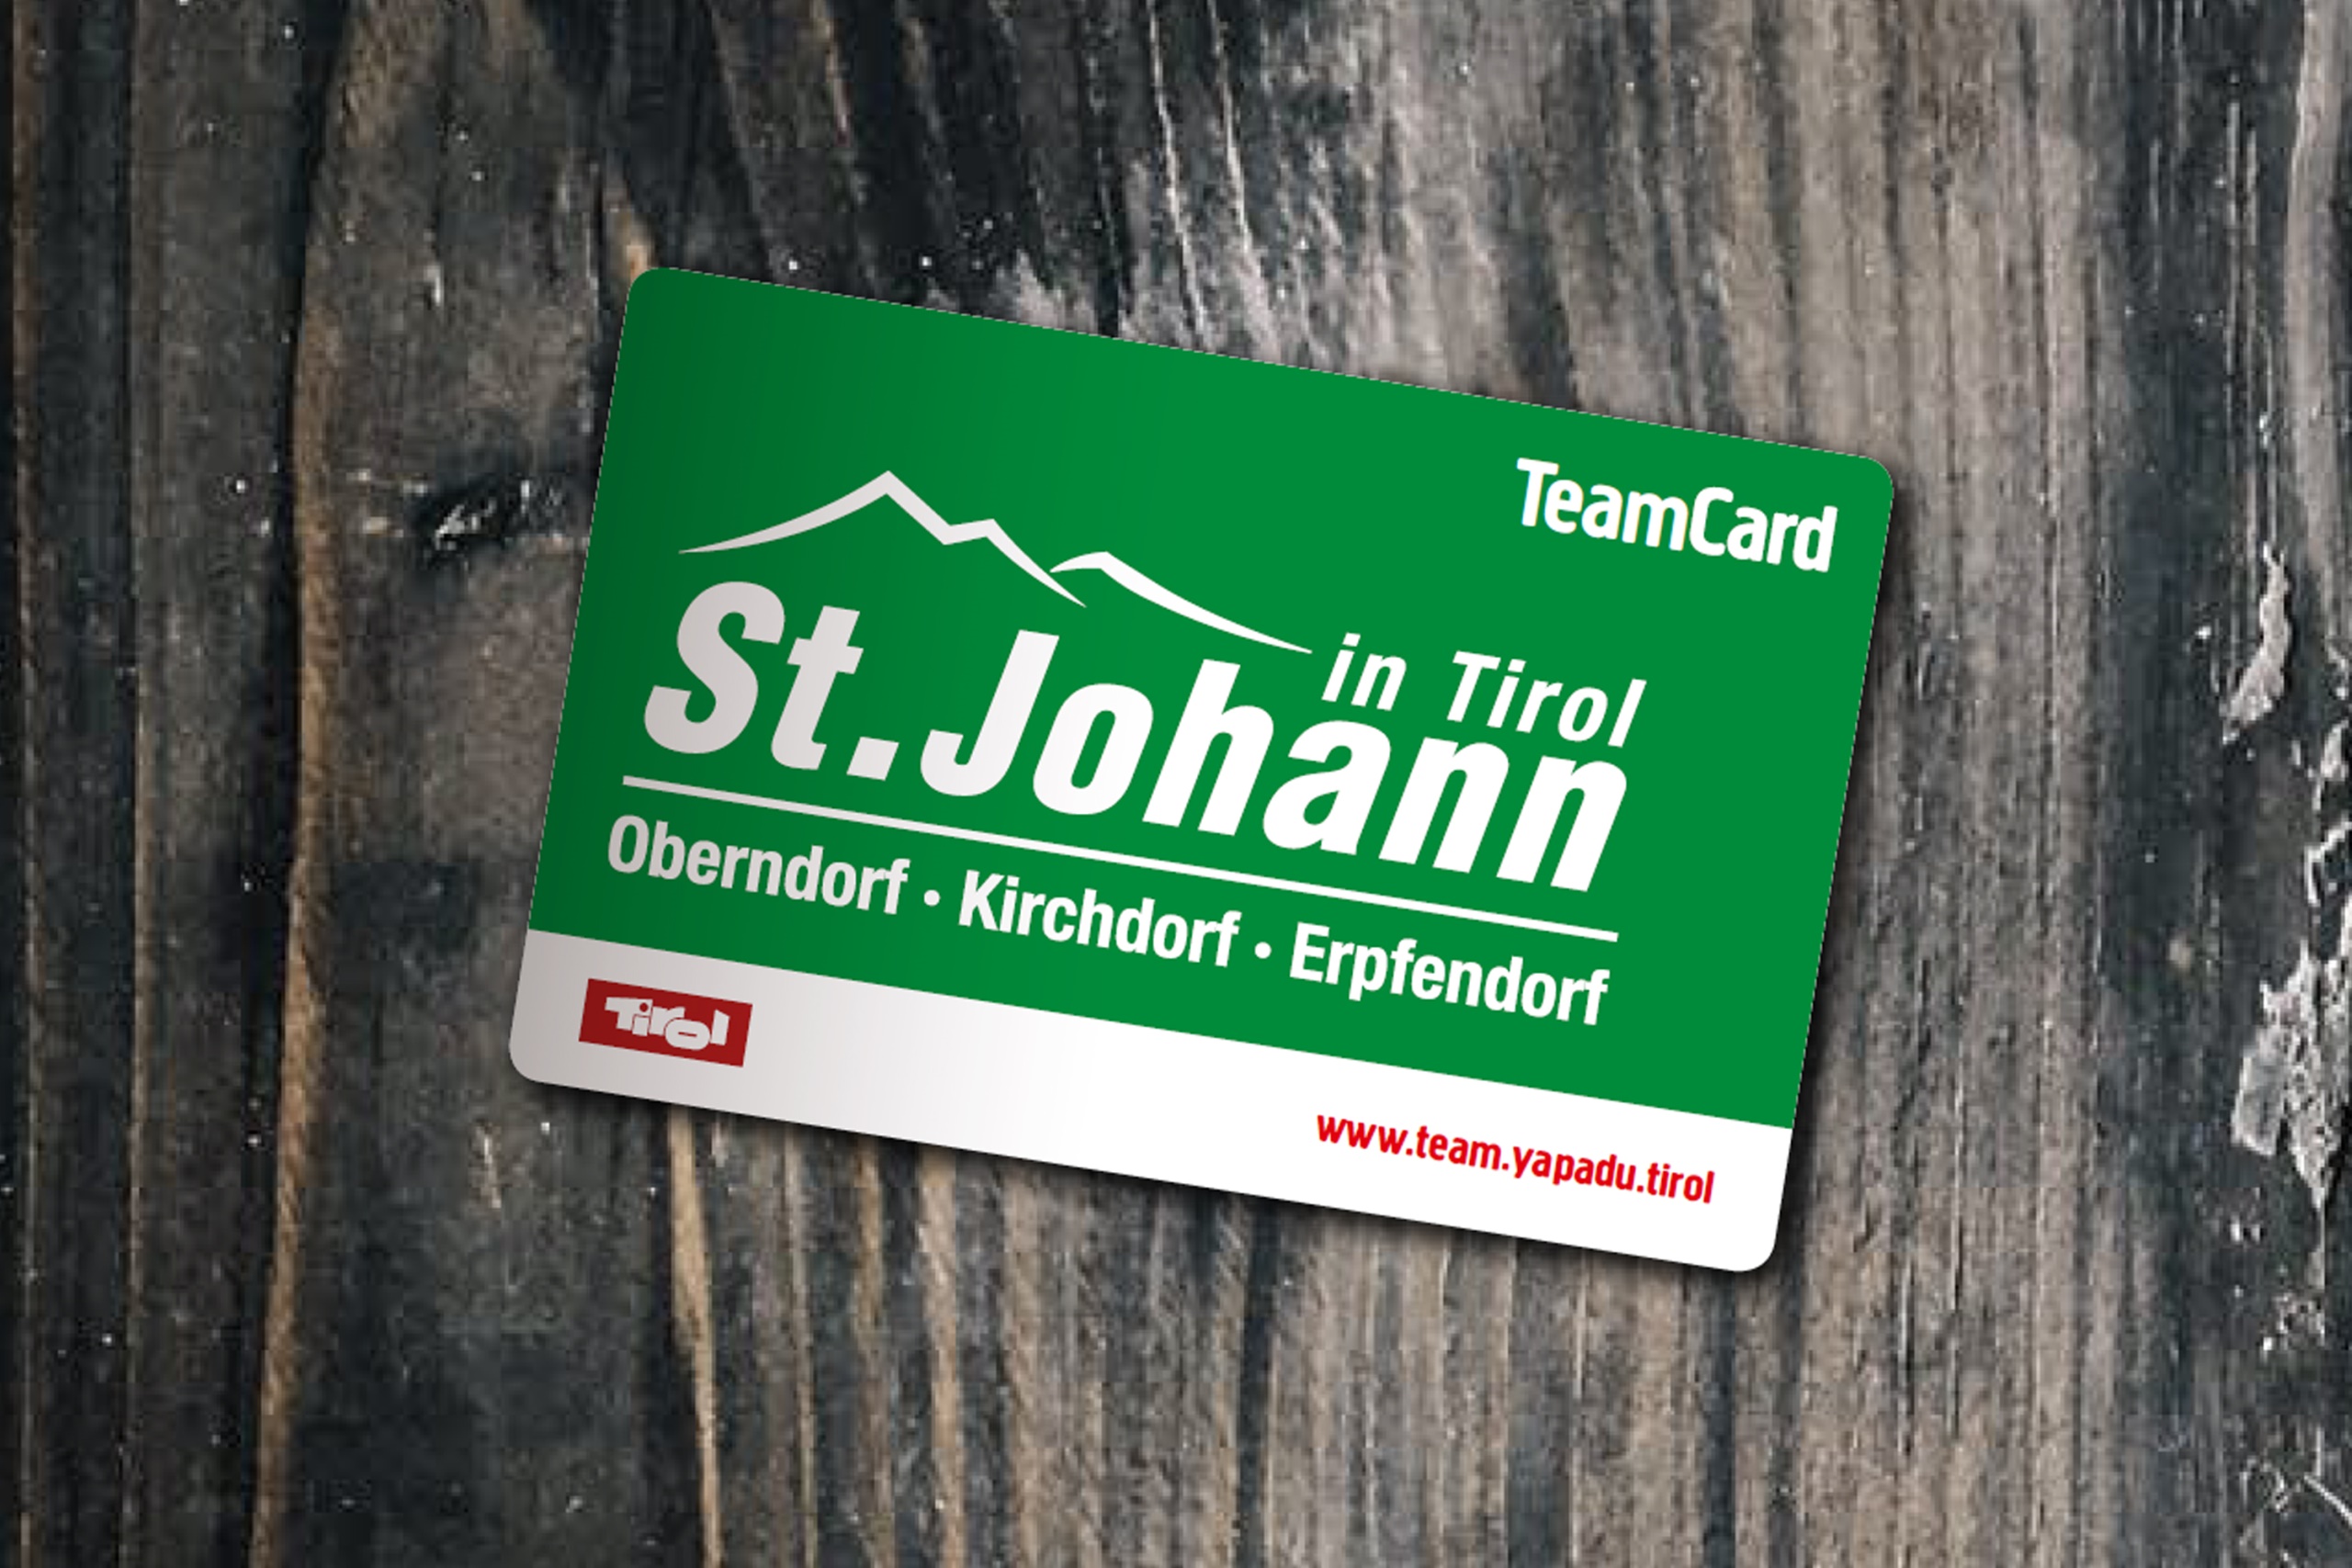 Teamcard St. Johann